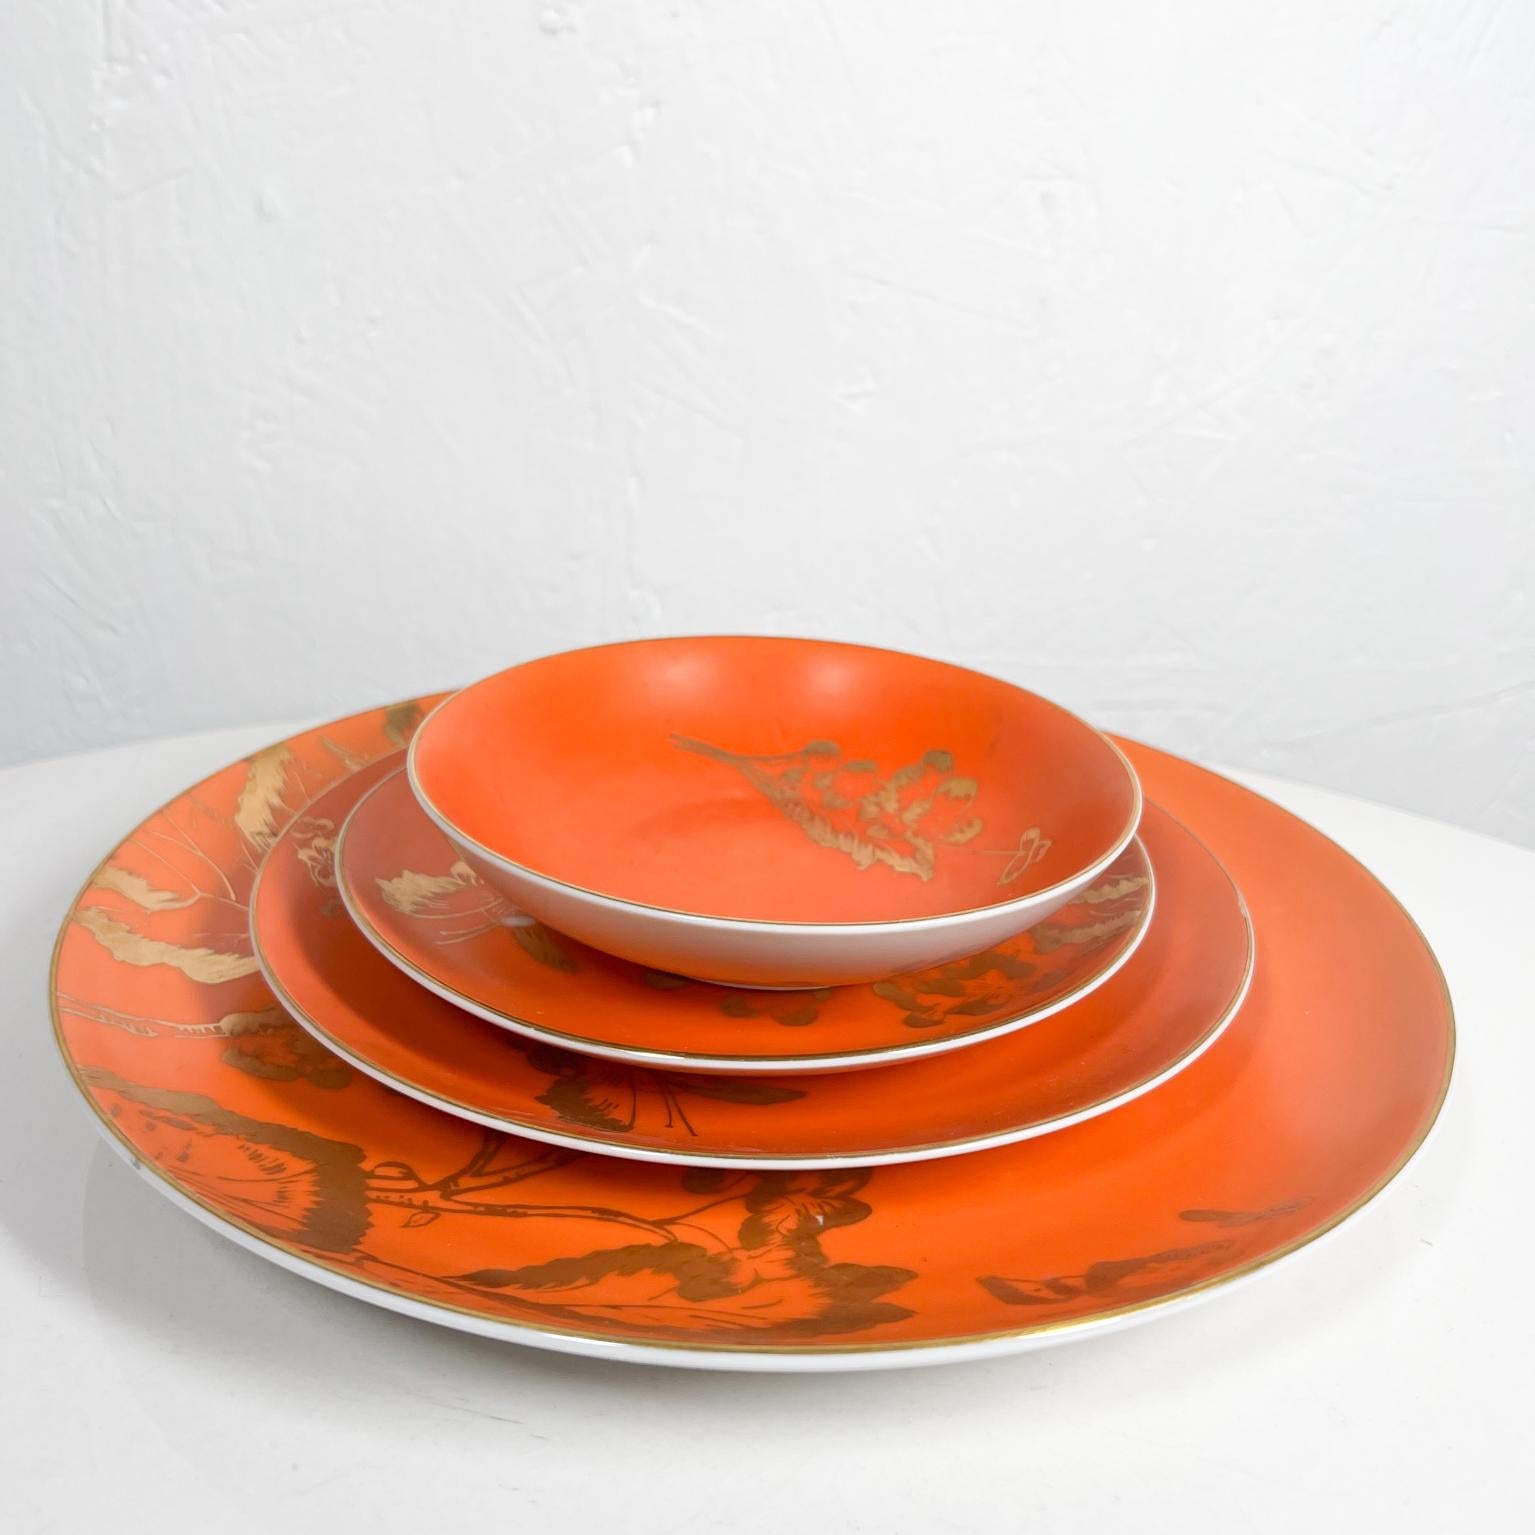 Ceramic 1960s Dorothy C. Thorpe California Persimmon Orange & Gold Dinnerware Set Four